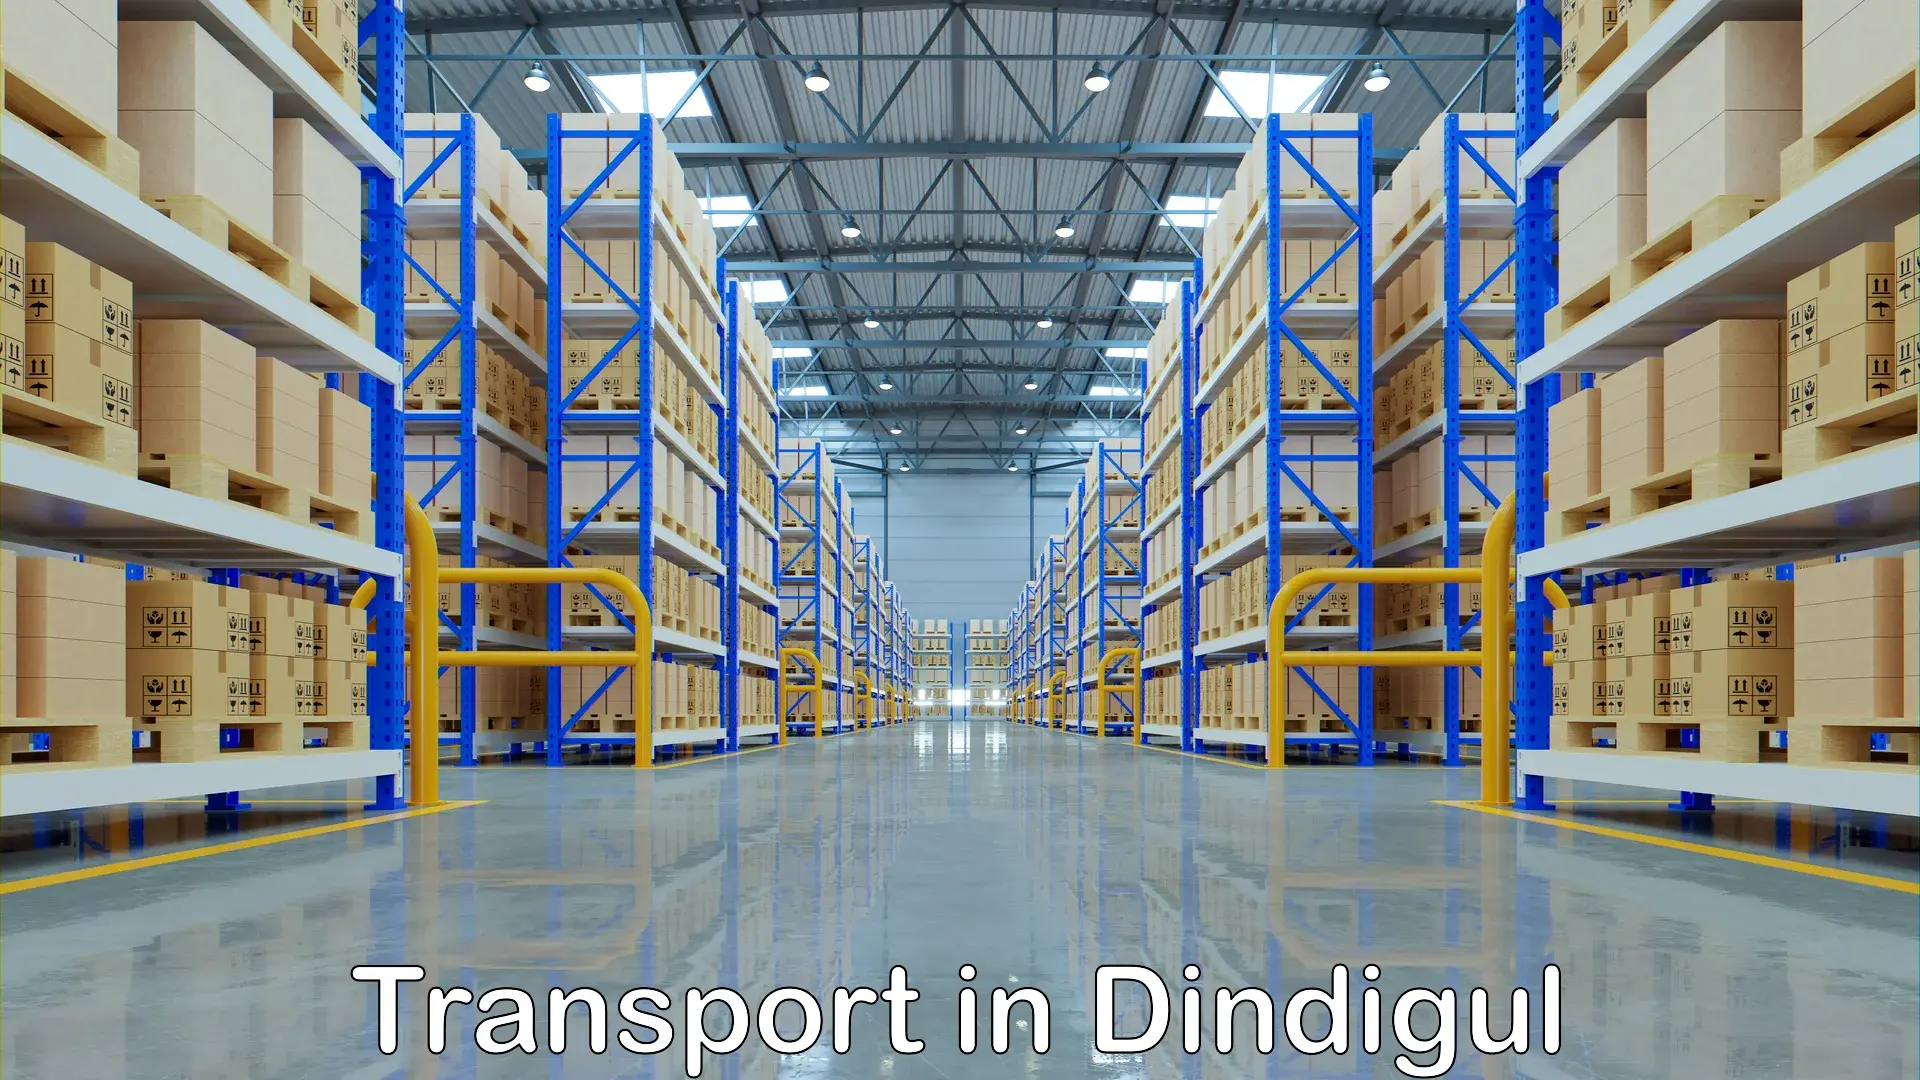 Furniture transport service in Dindigul